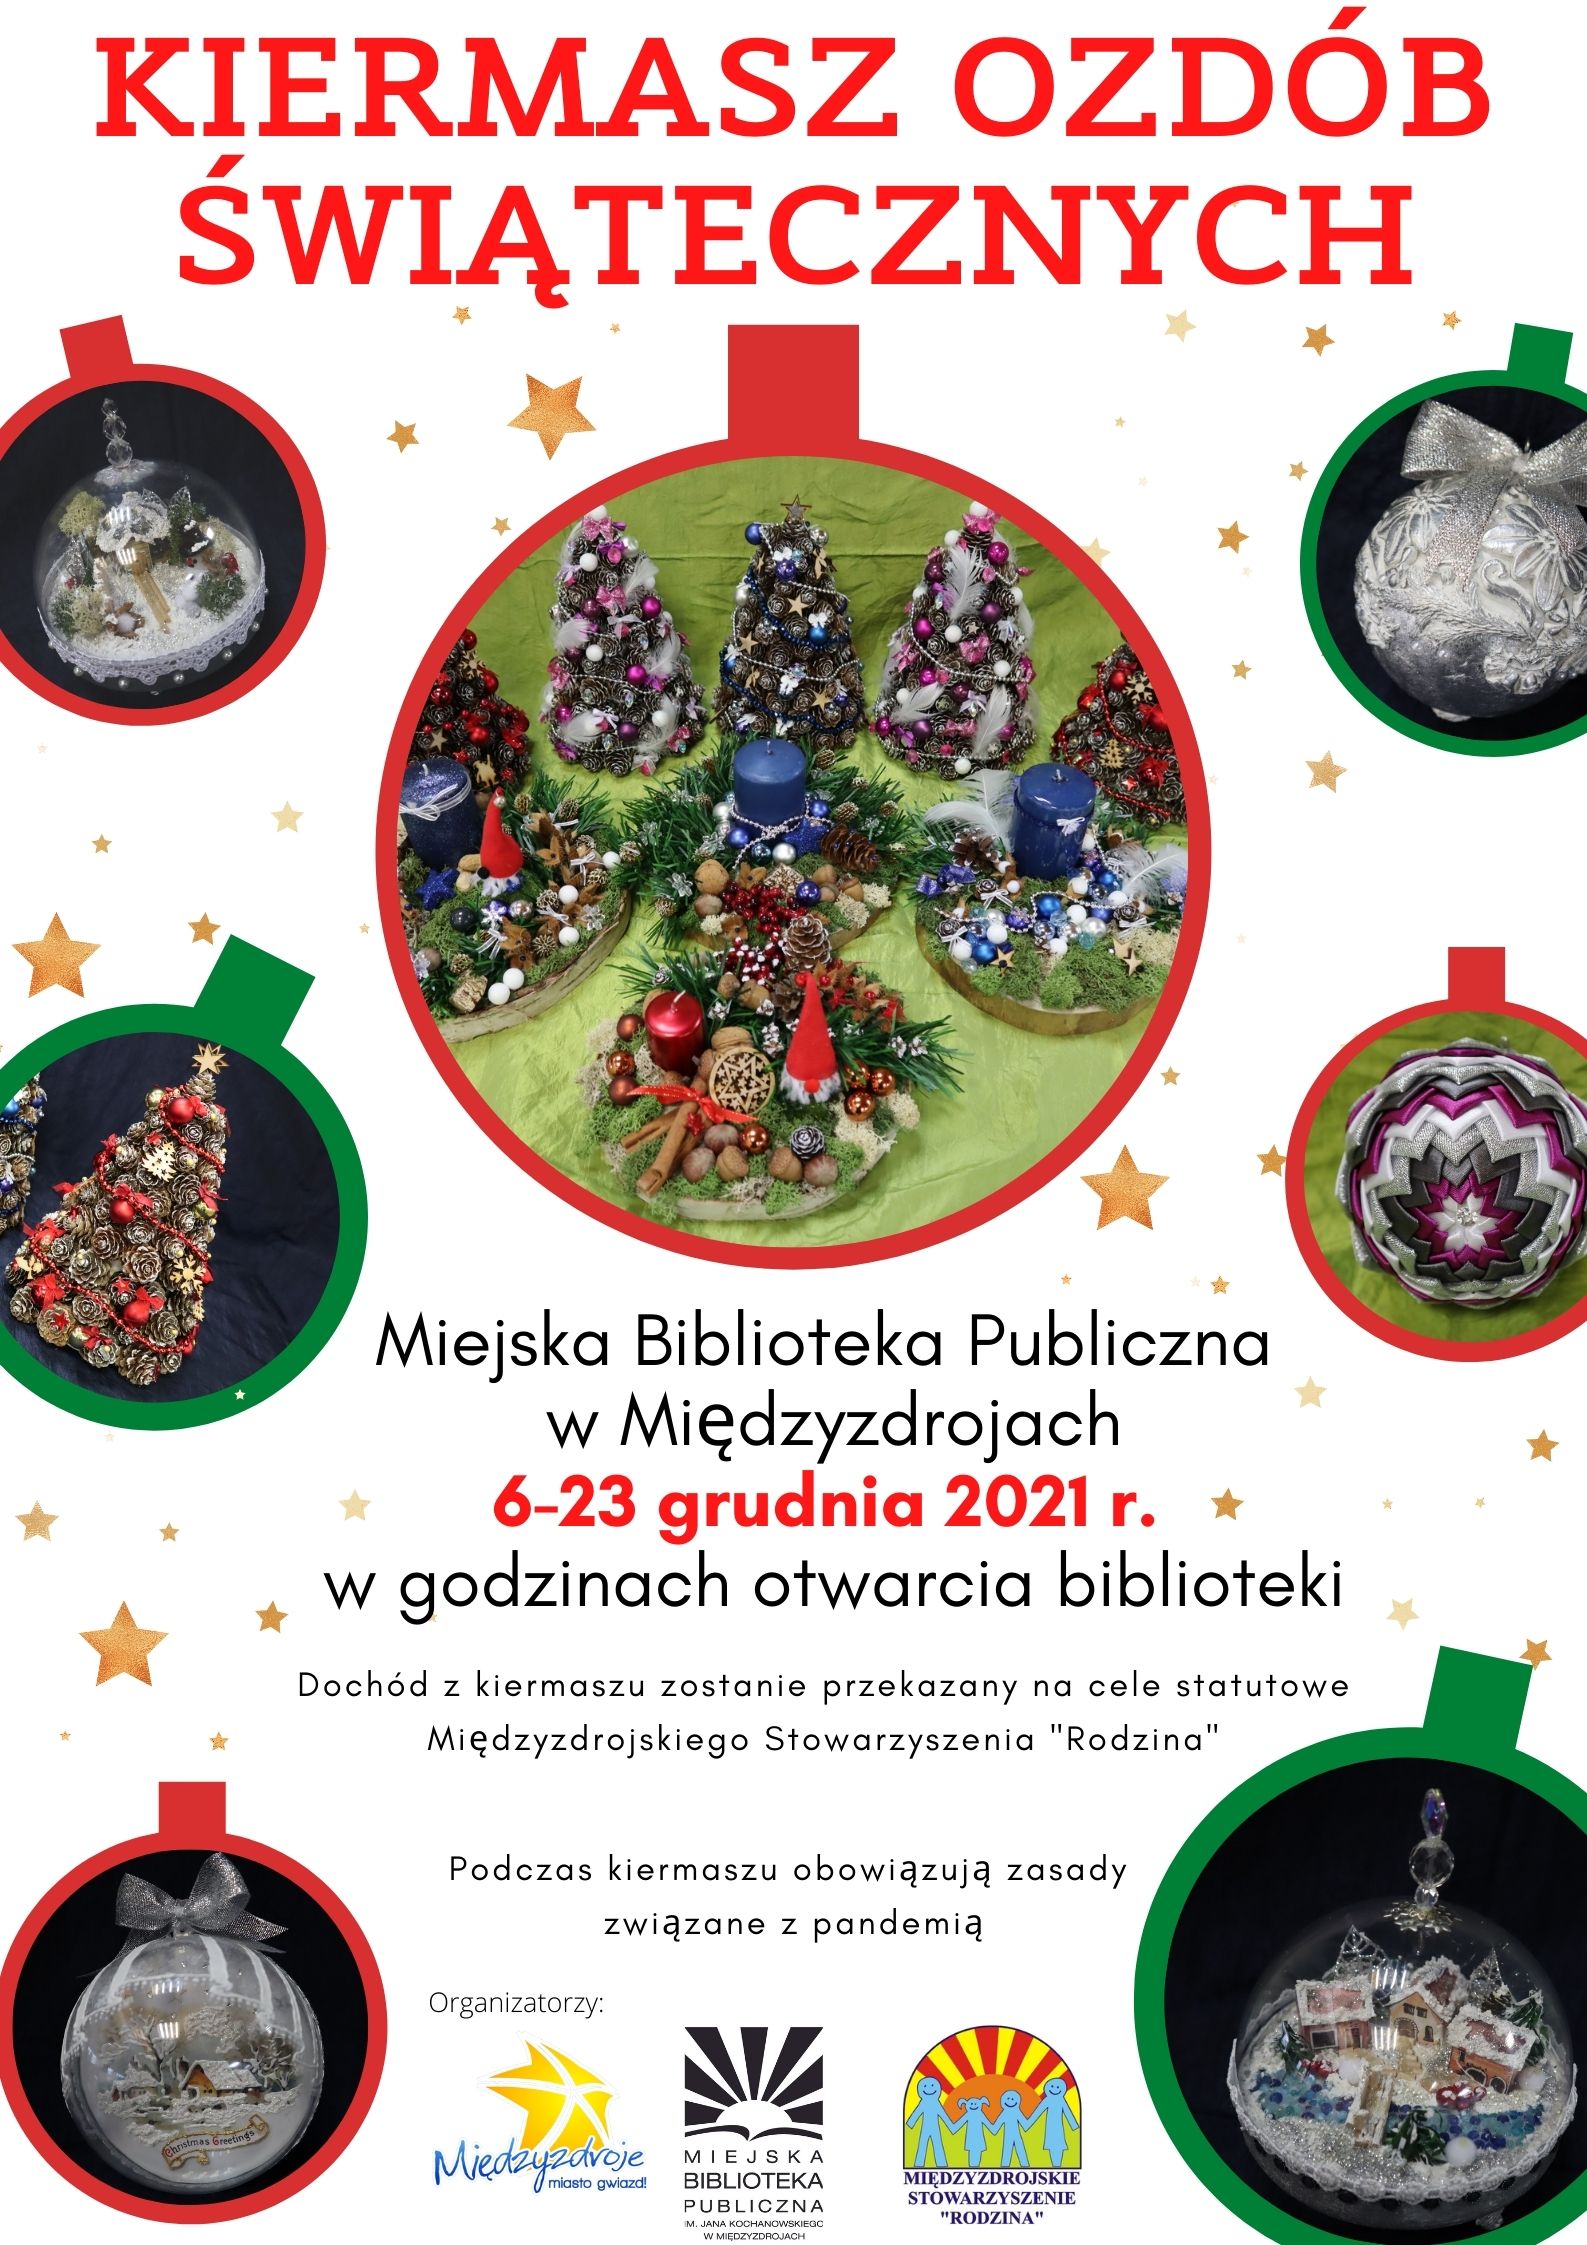 Kiermasz ozdób świątecznych w bibliotece 6-23 grudnia 2021 r.